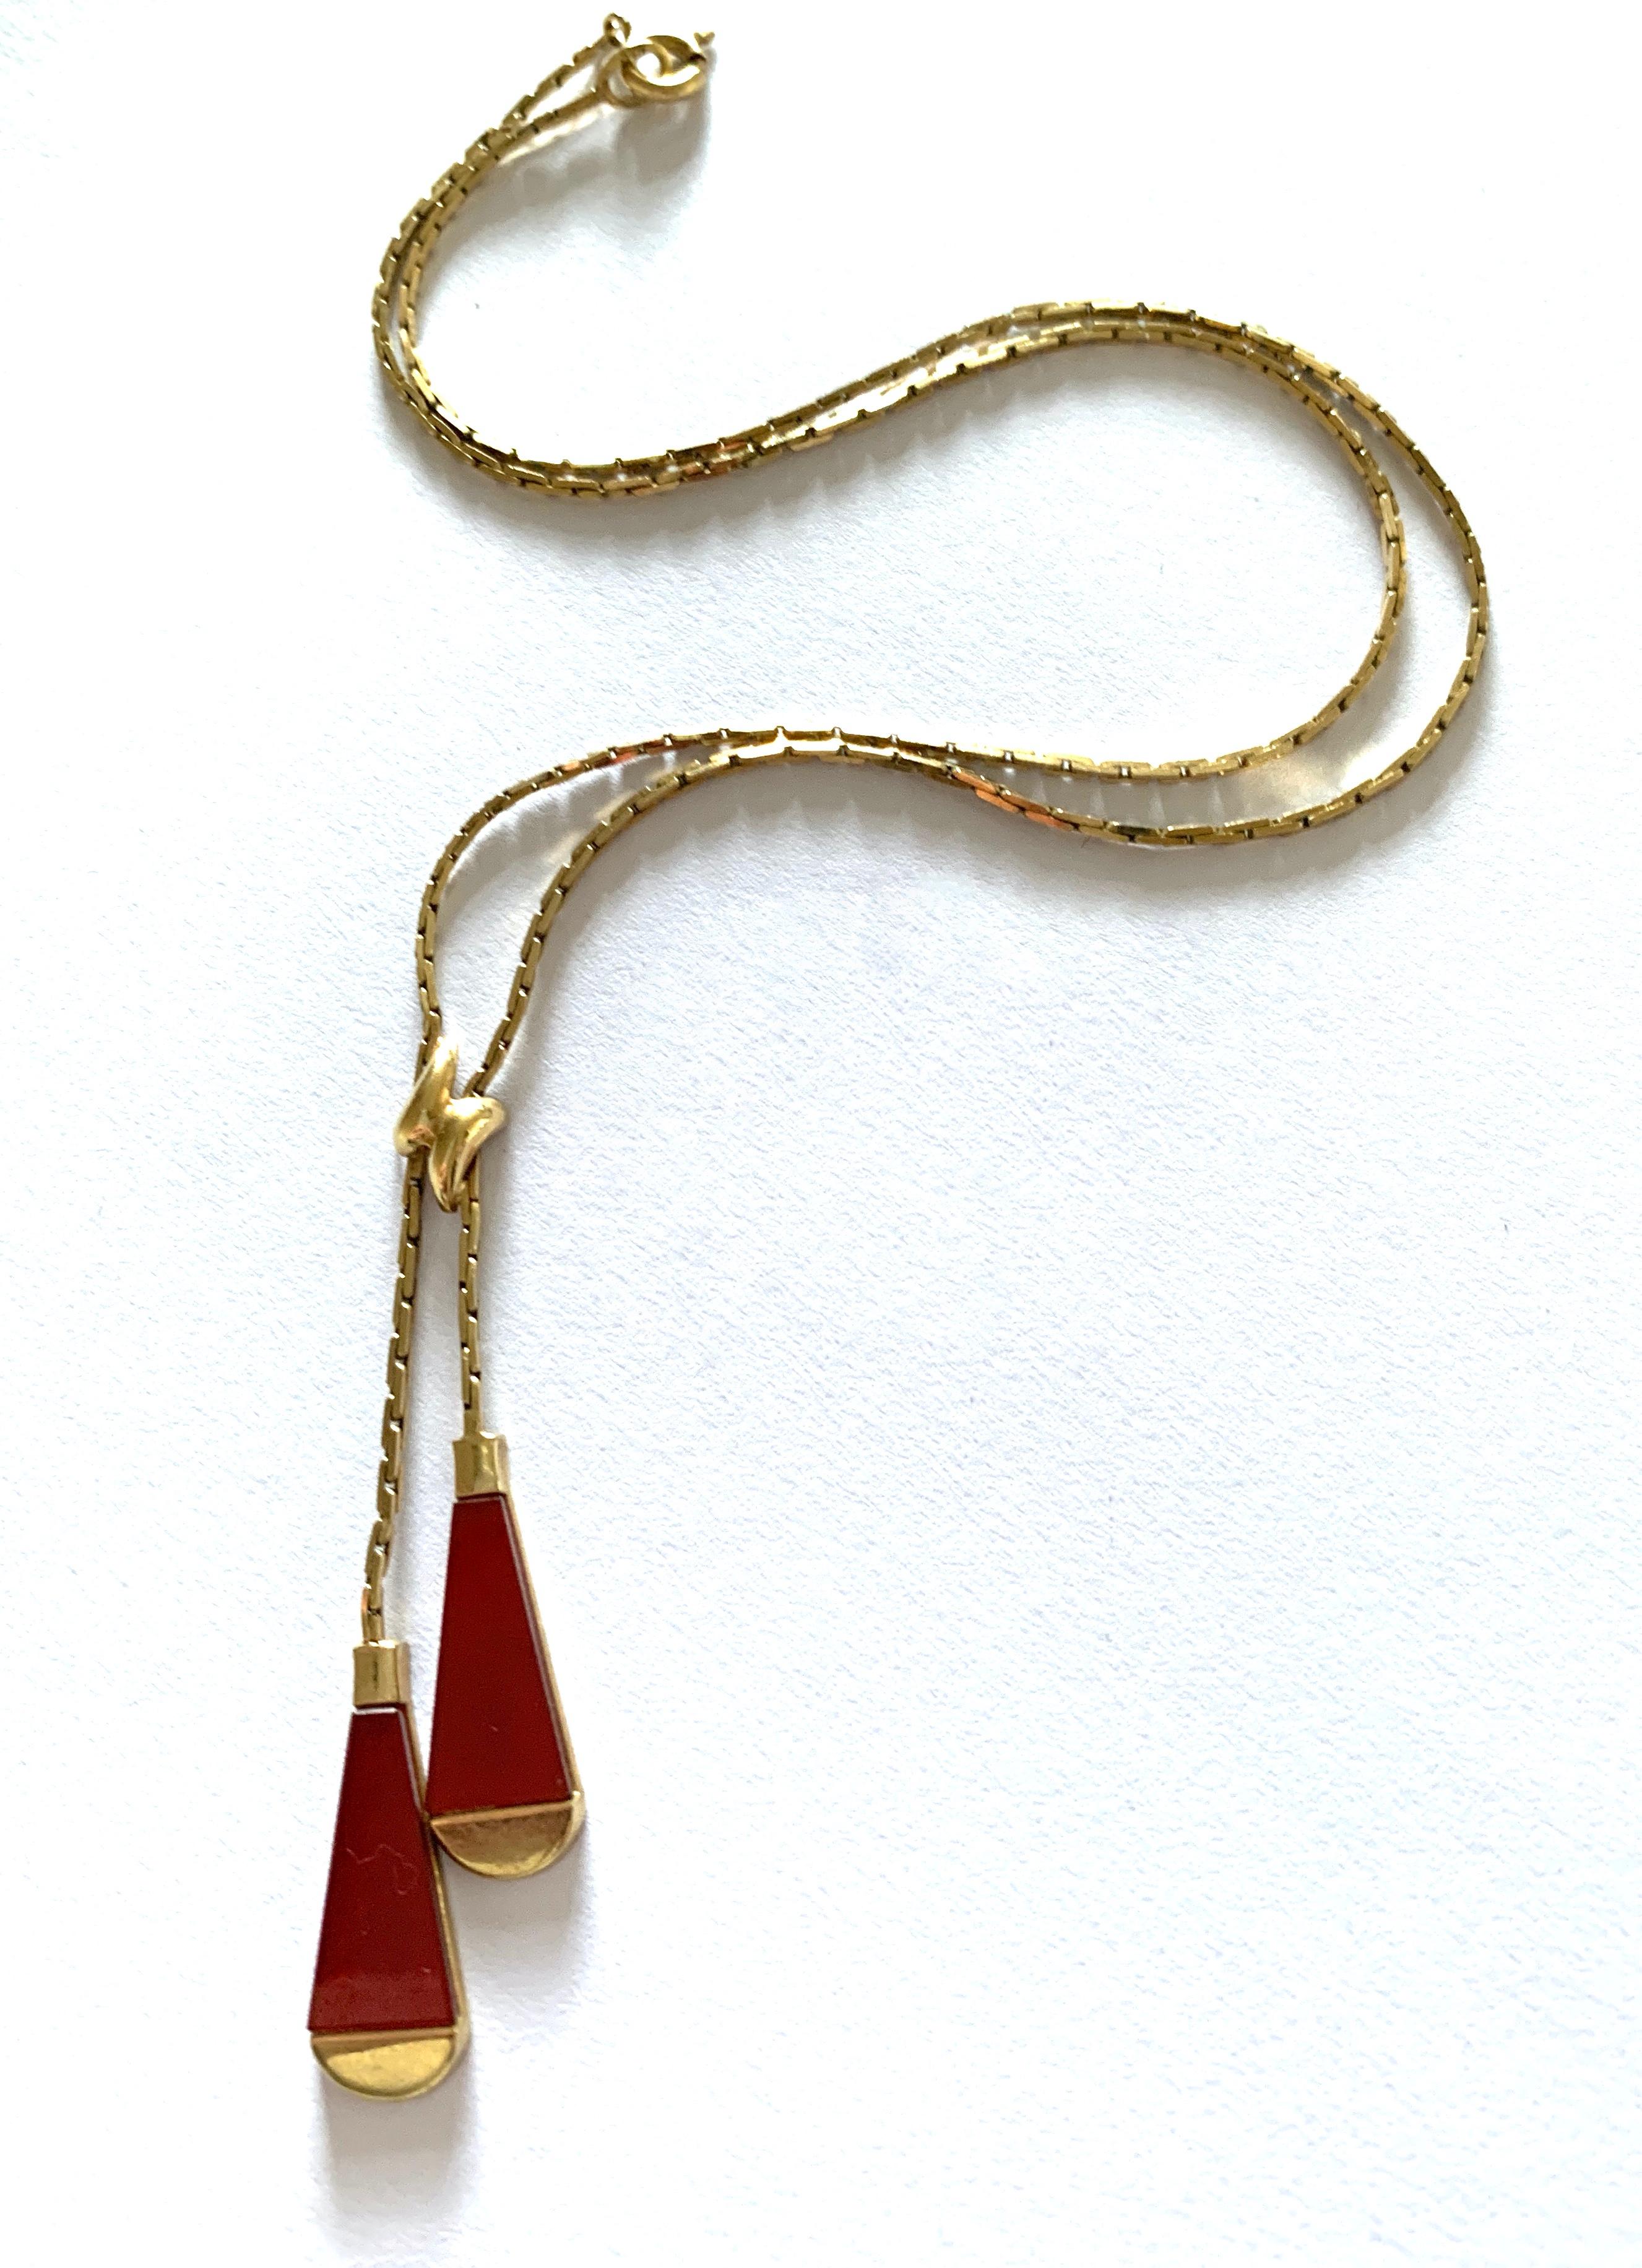 Einzigartige 9ct Gold Choker Halskette 
mit Karneol-Einsätzen 
Circa 1970er Jahre 
Vollständige britische Punzierungen - Einfuhrzeichen
Herstellerinitialen 